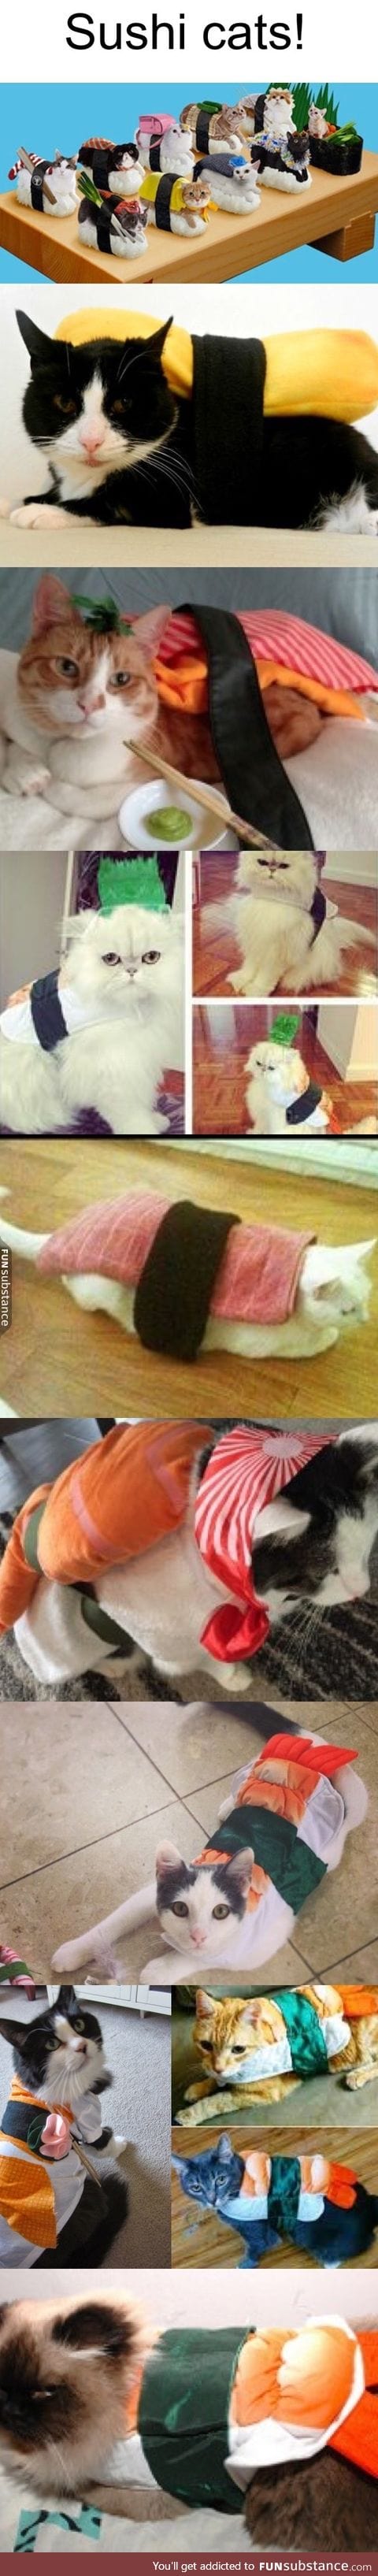 Sushi cats